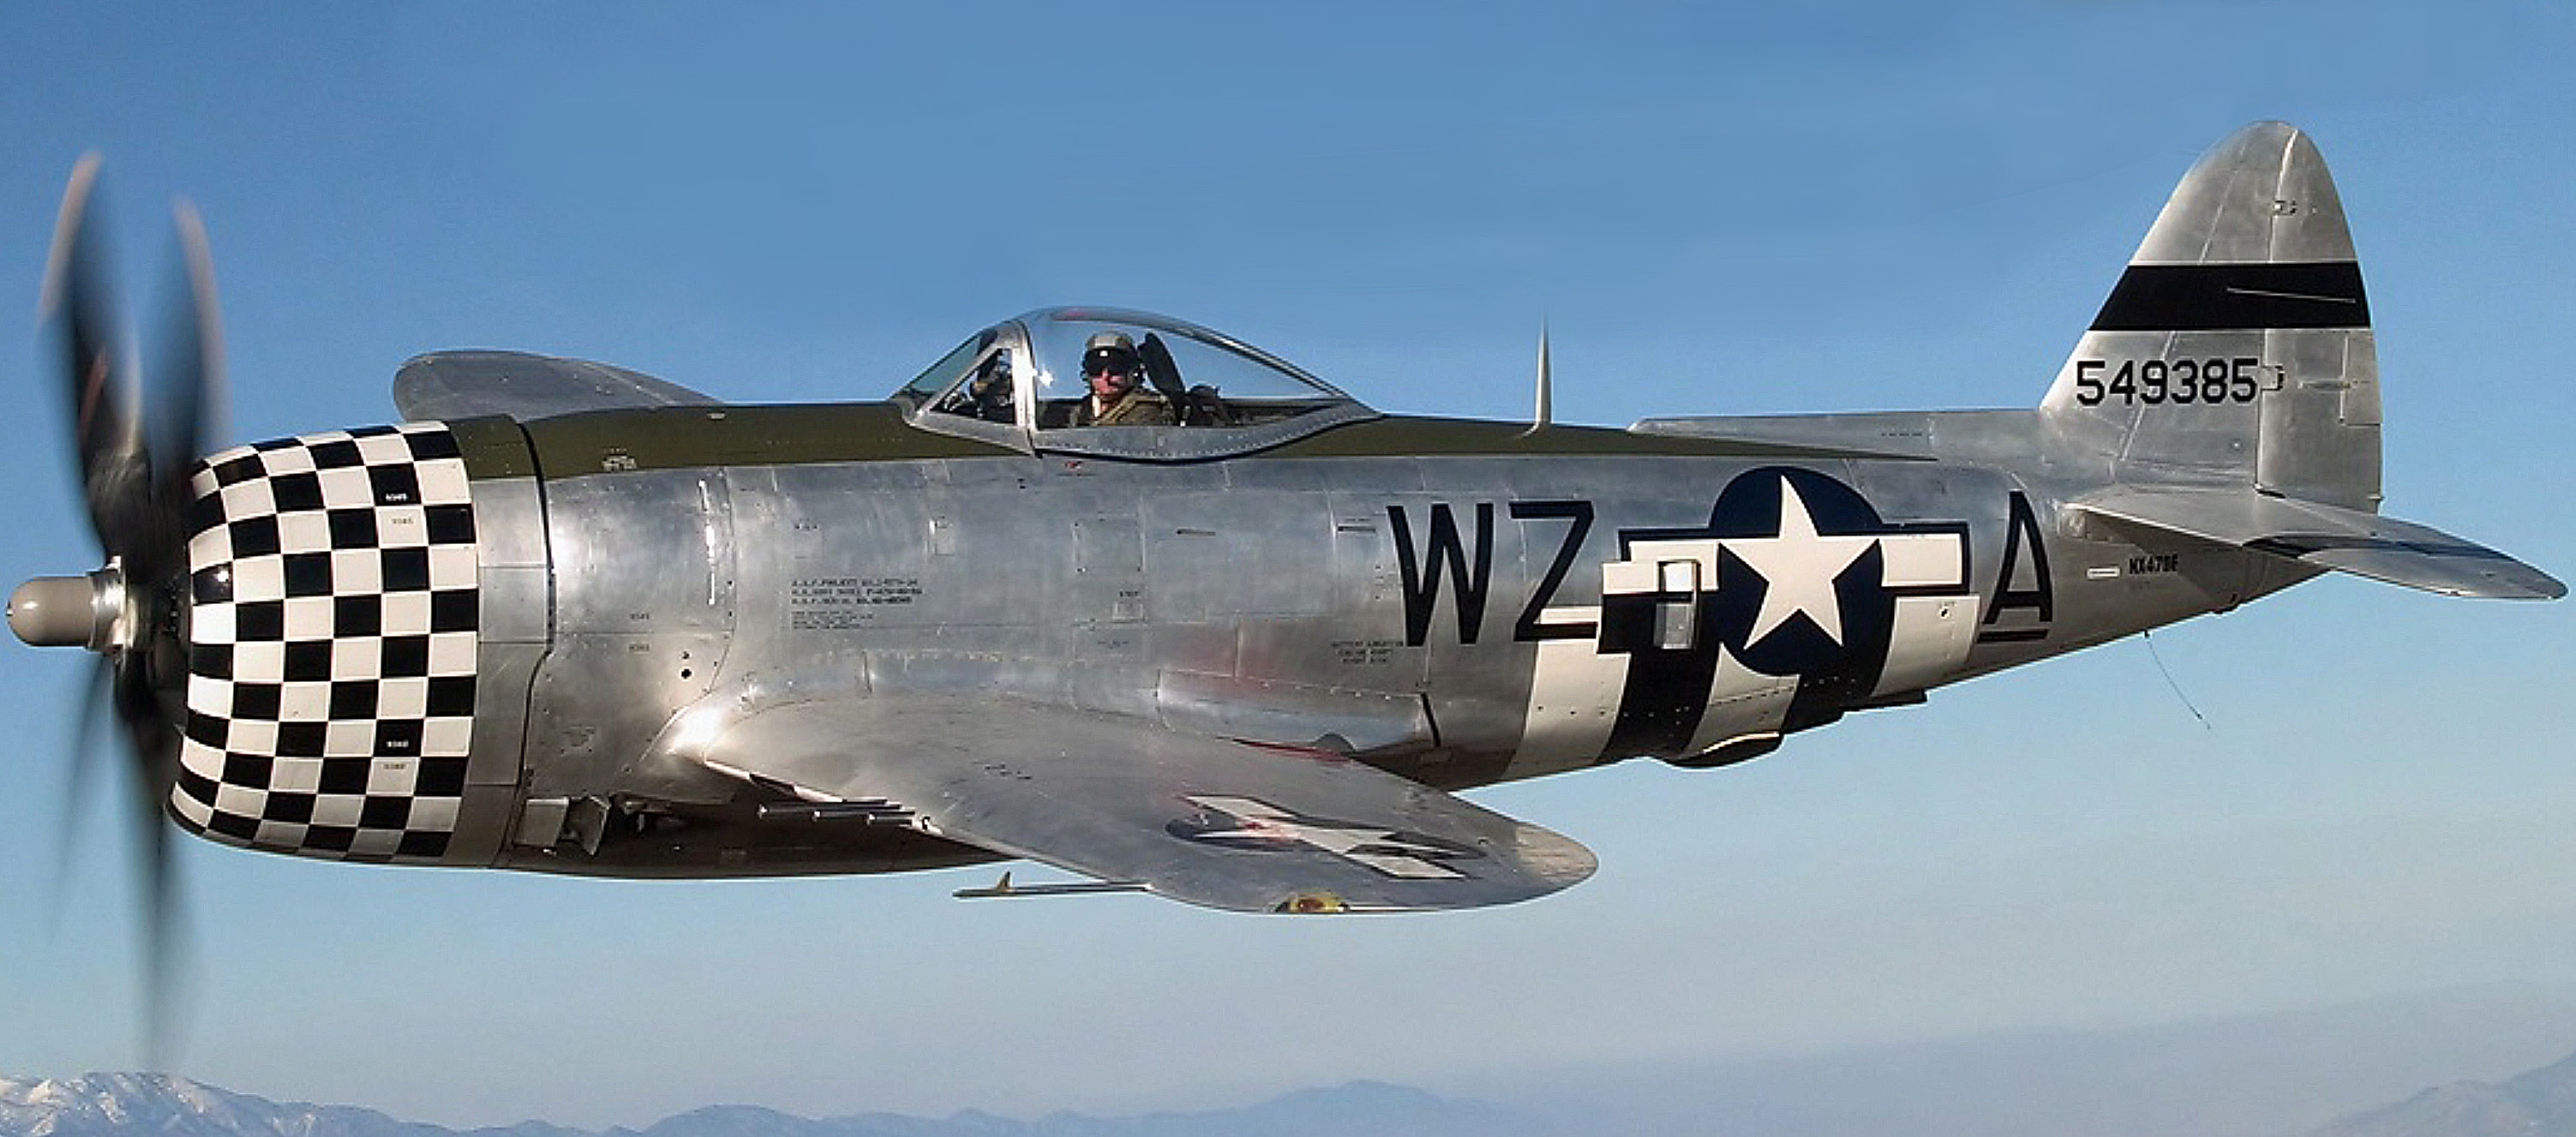 Airworthy-Republic-P-47D-Thunderbolt-warbird-N47DF-as-8AF-78FG84